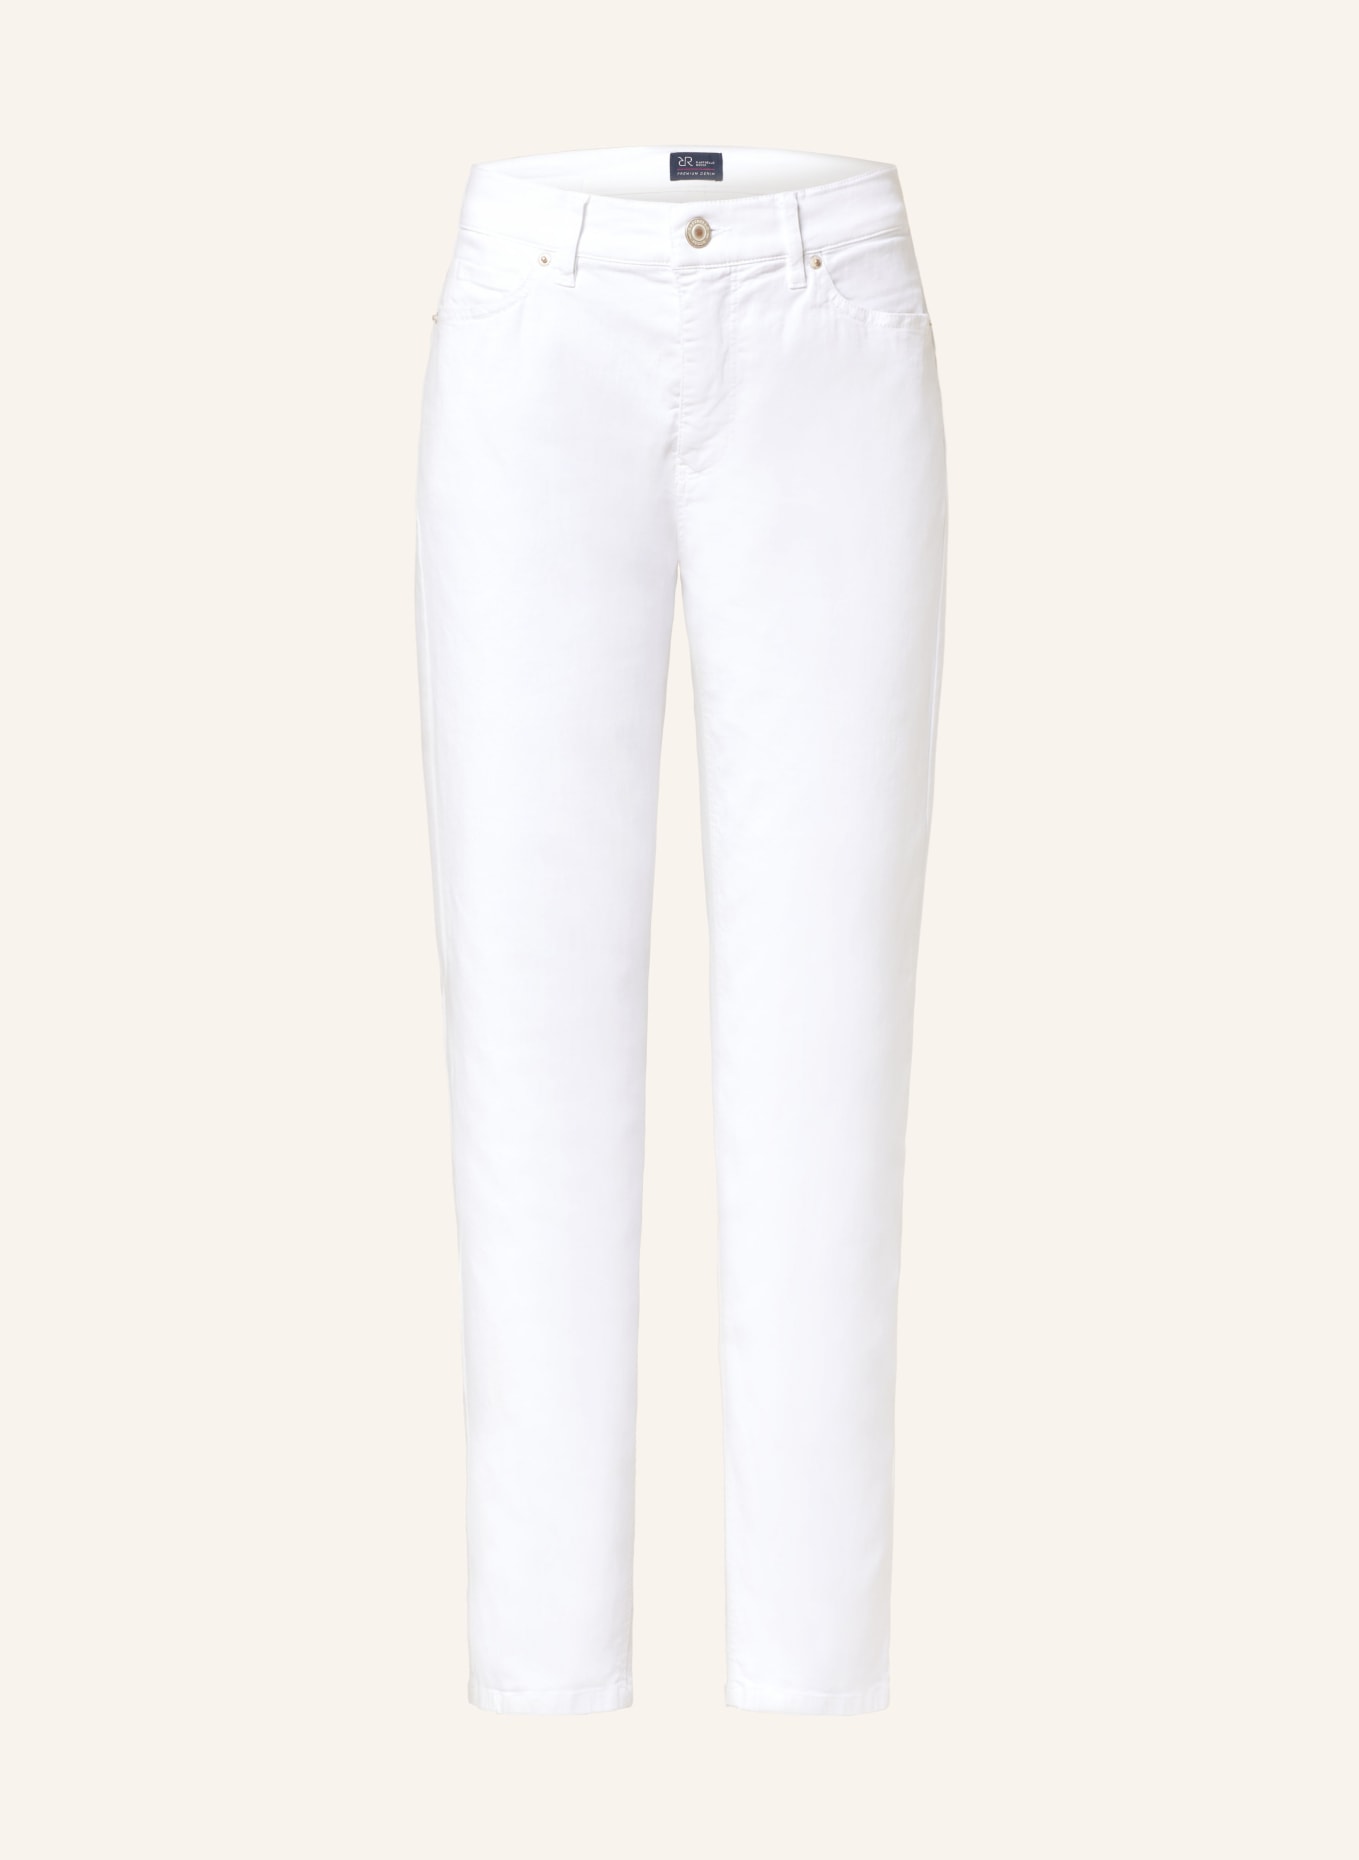 RAFFAELLO ROSSI Jeans SUZY, Color: 110 WEISS (Image 1)